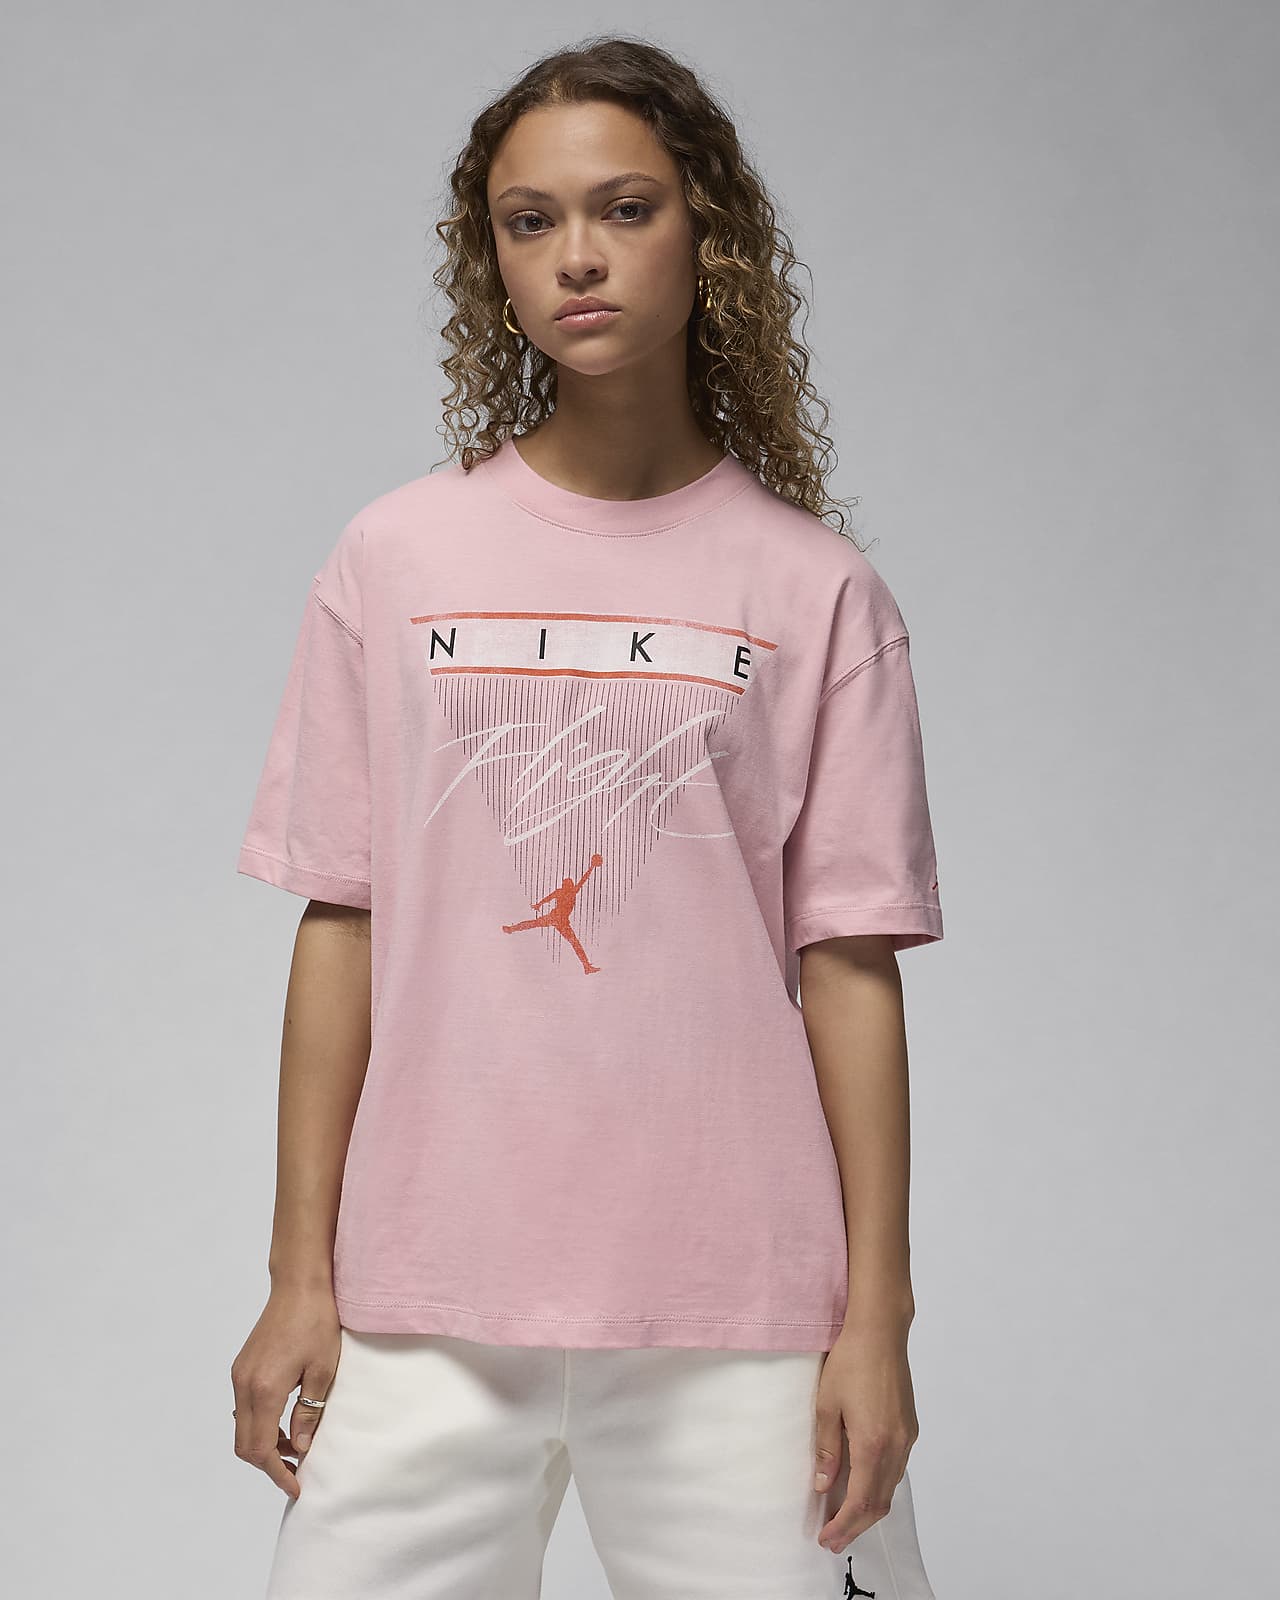 Women's Pink Tops & T-Shirts. Nike CA